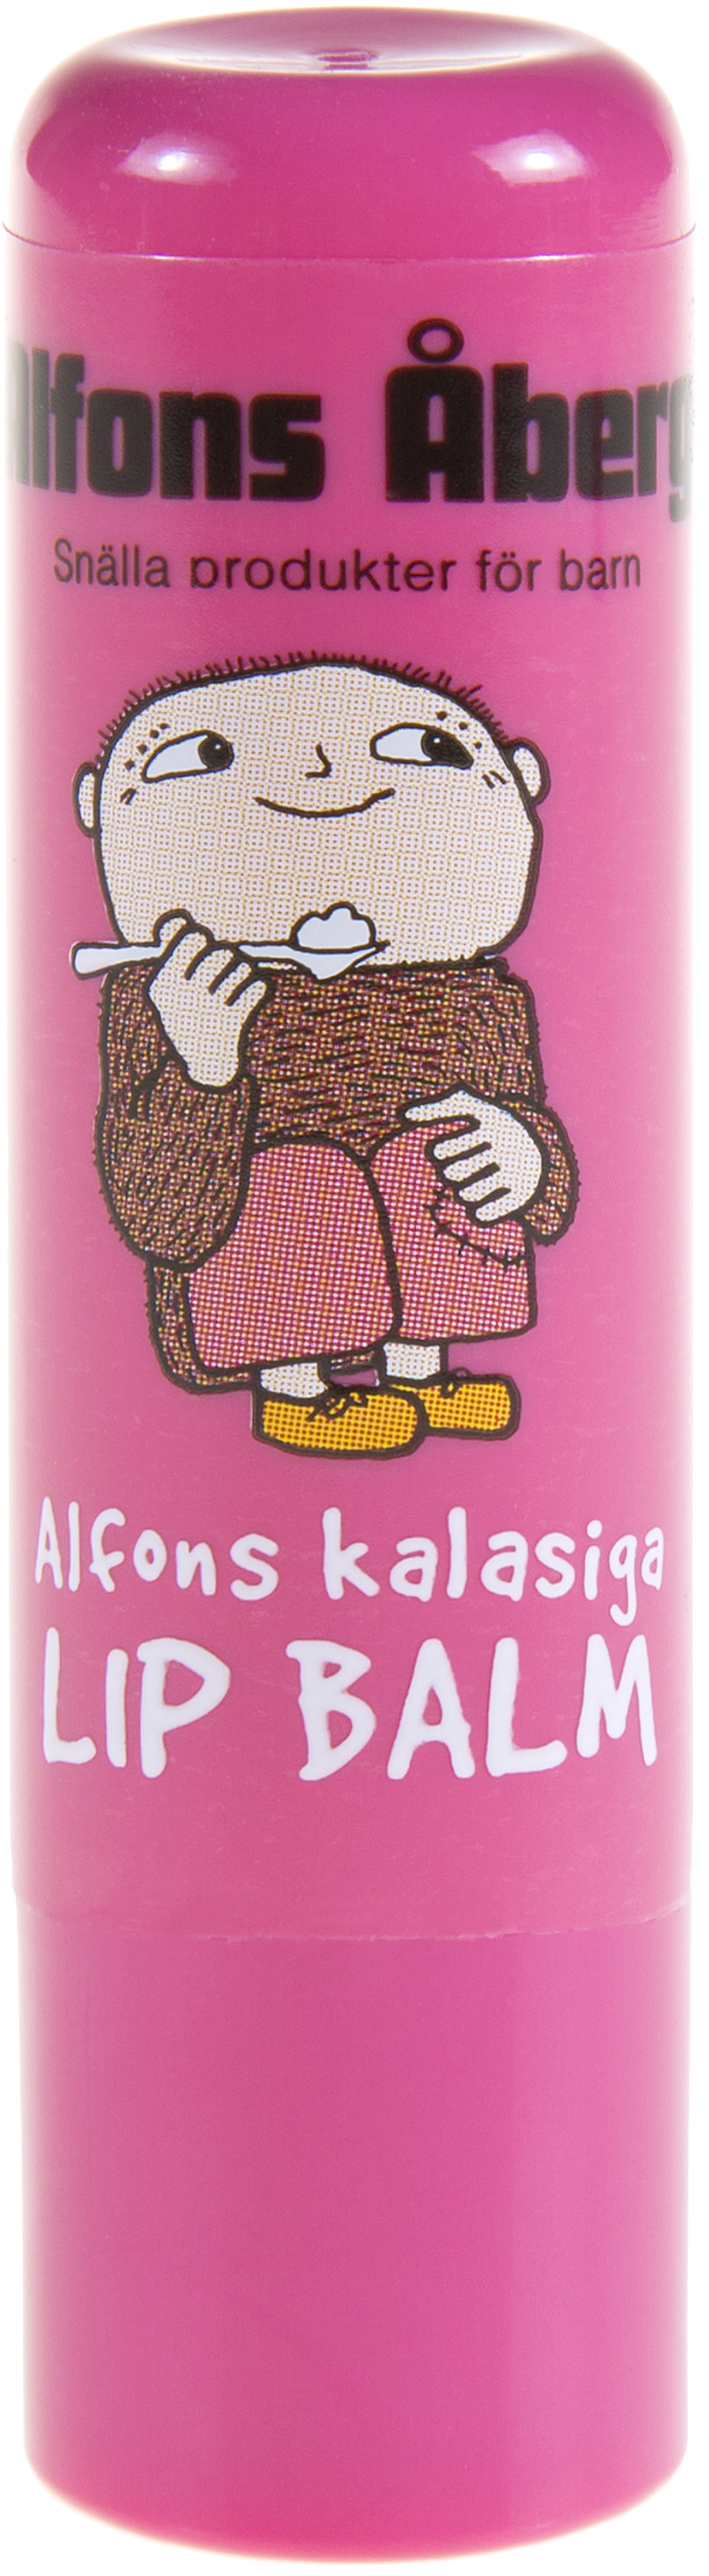 Alfons Kalasiga Lip Balm 4,5 g